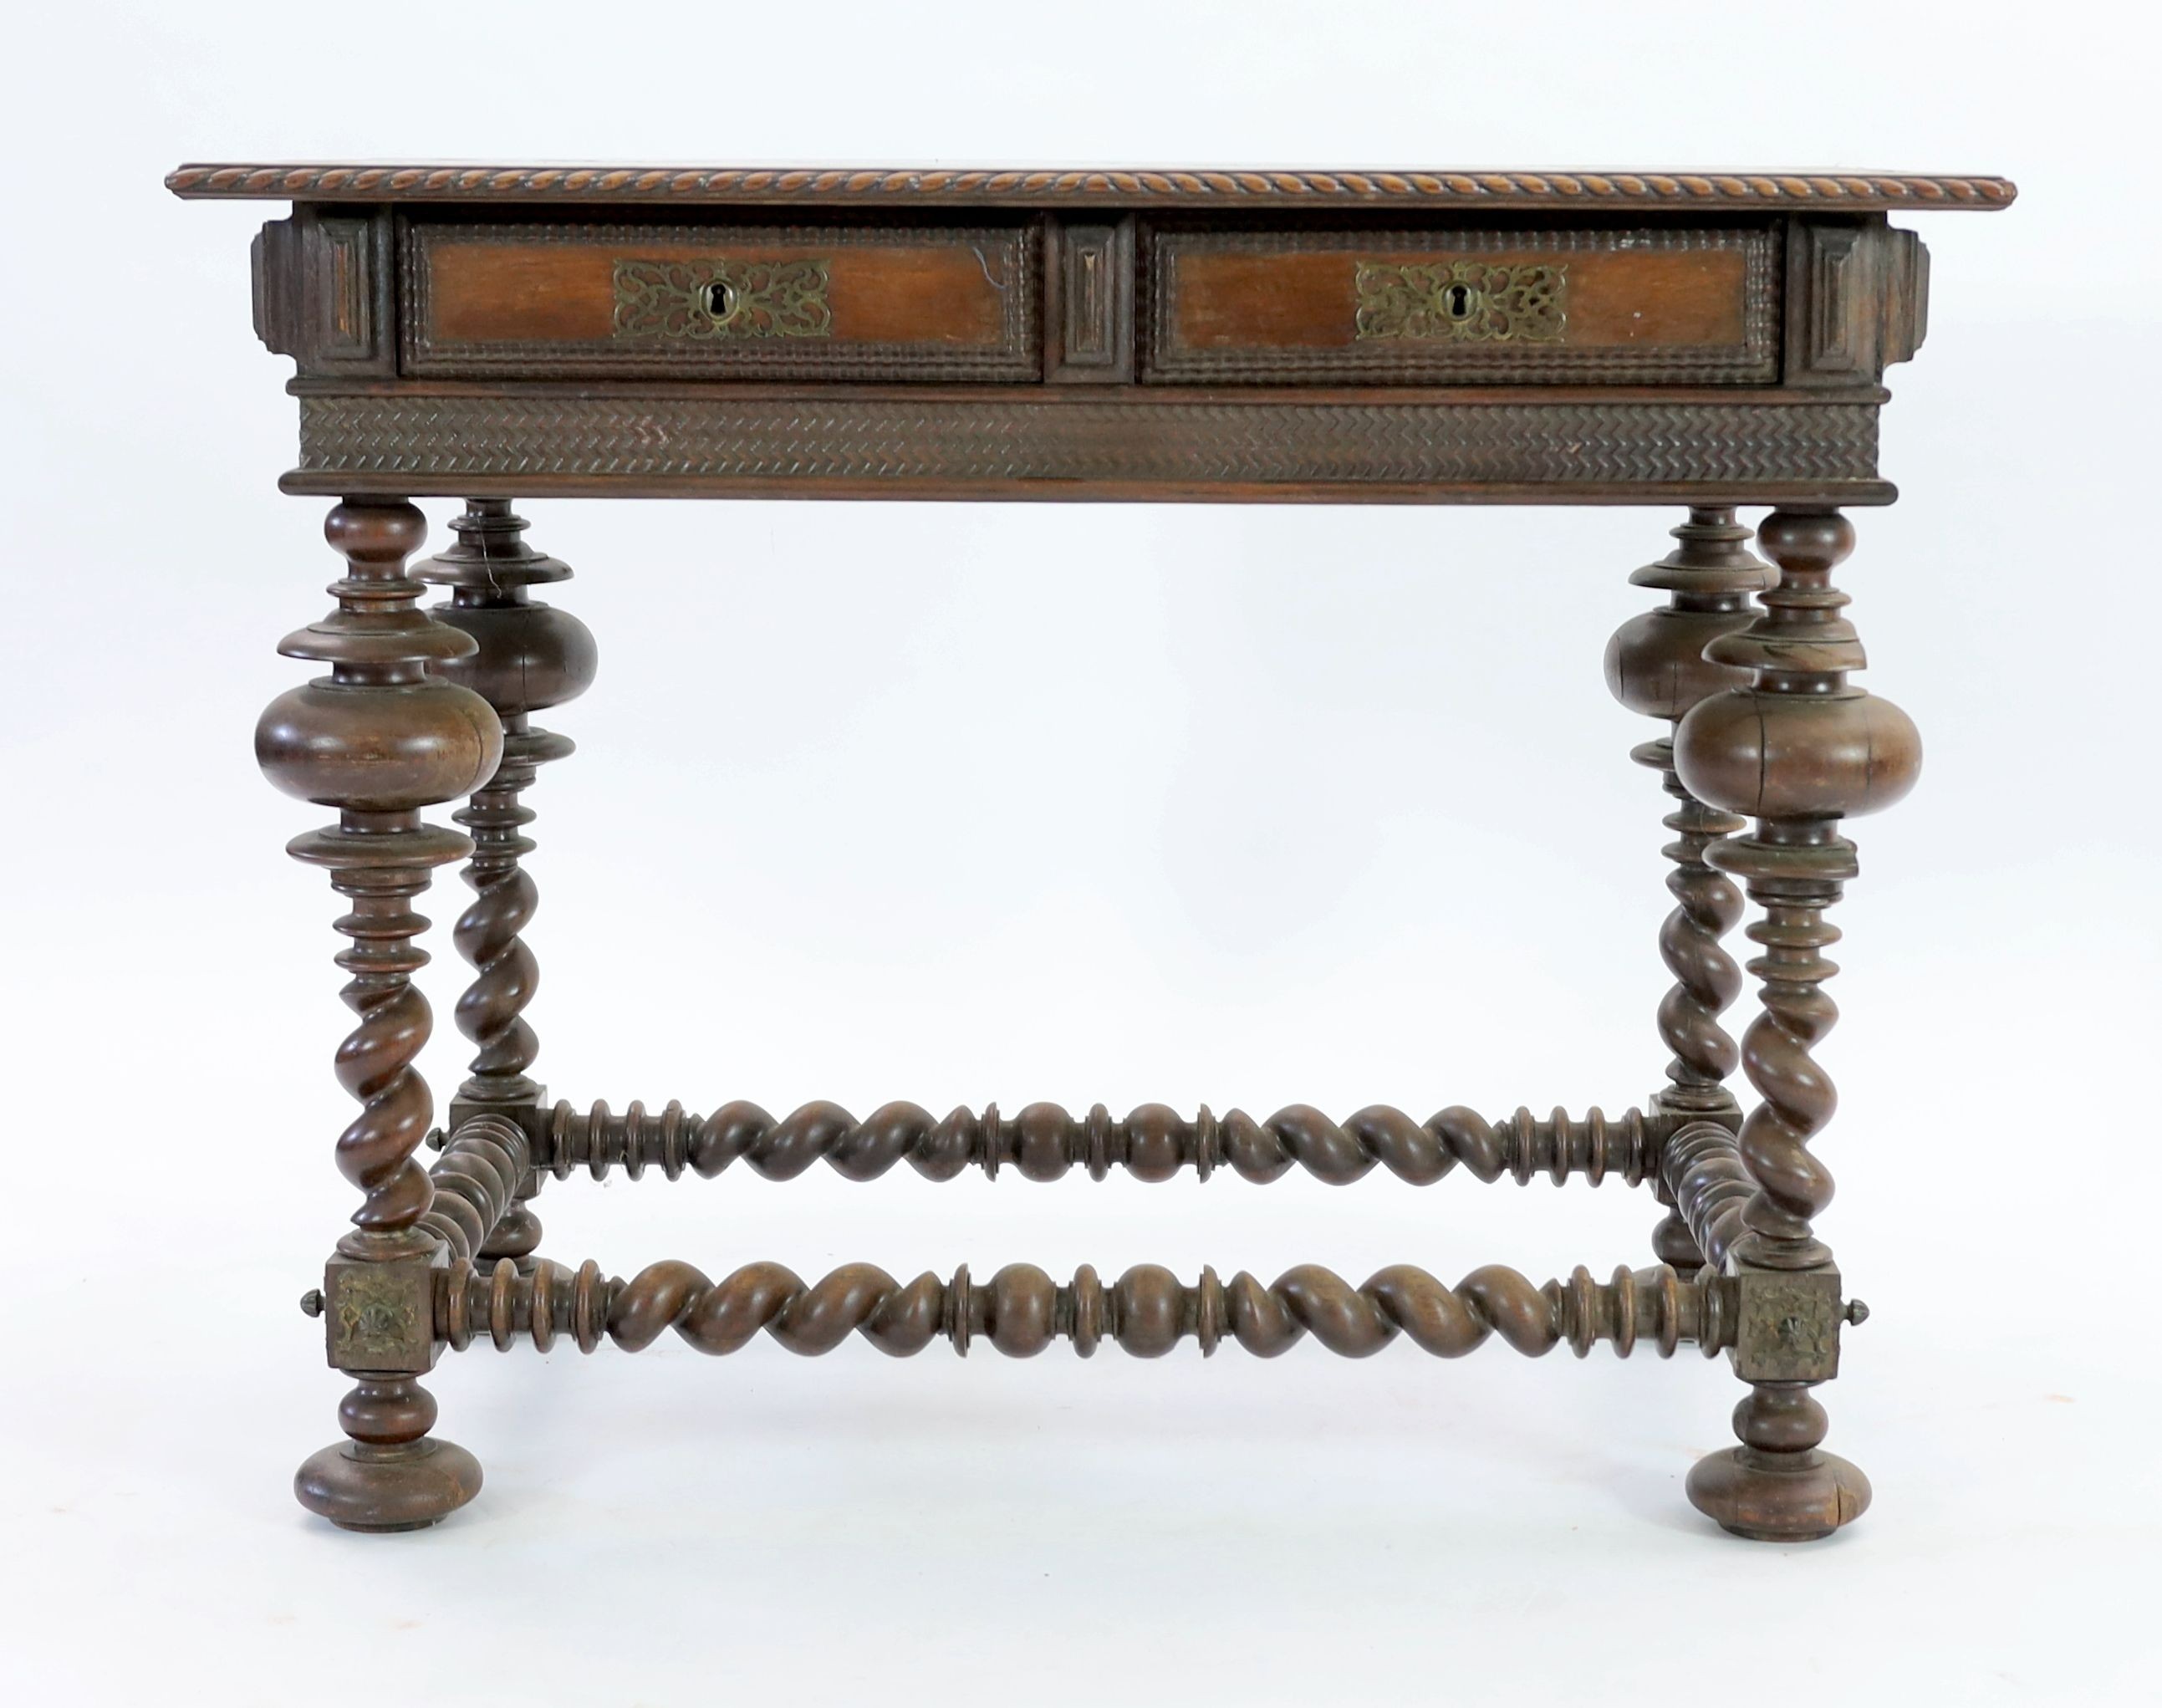 An 18th century Portuguese Colonial rosewood centre table, W.103cm D.63cm H.80cm